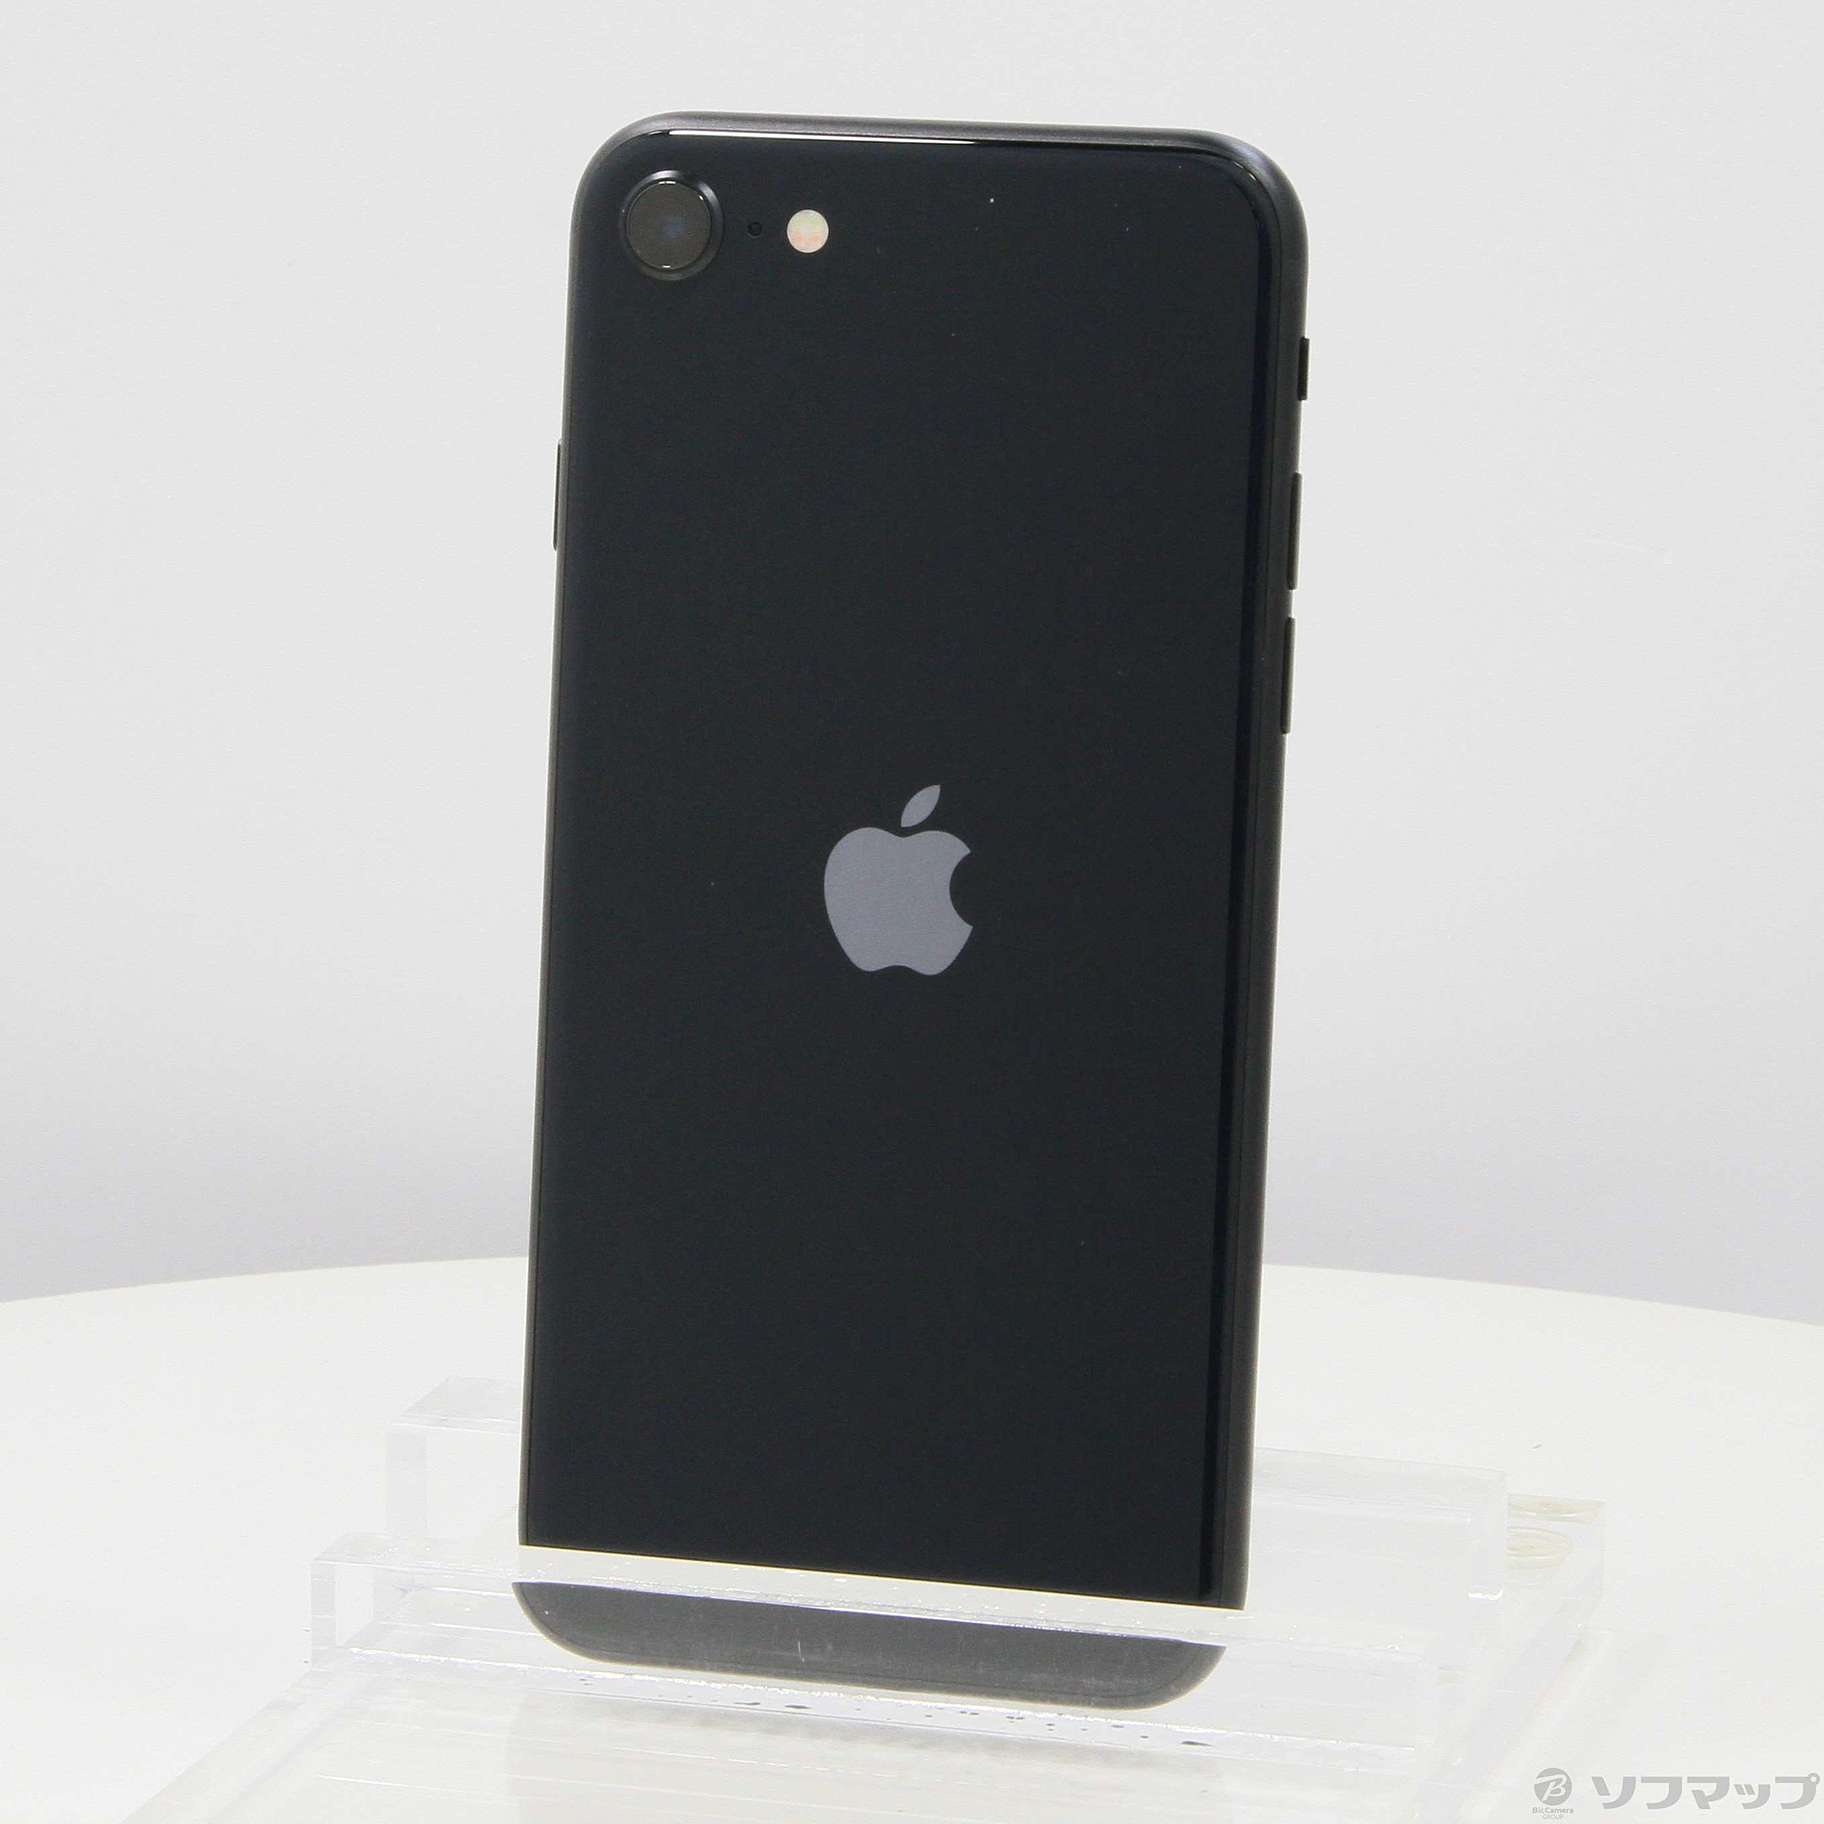 iPhone SE 第3世代 64GB ミッドナイト(ブラック)